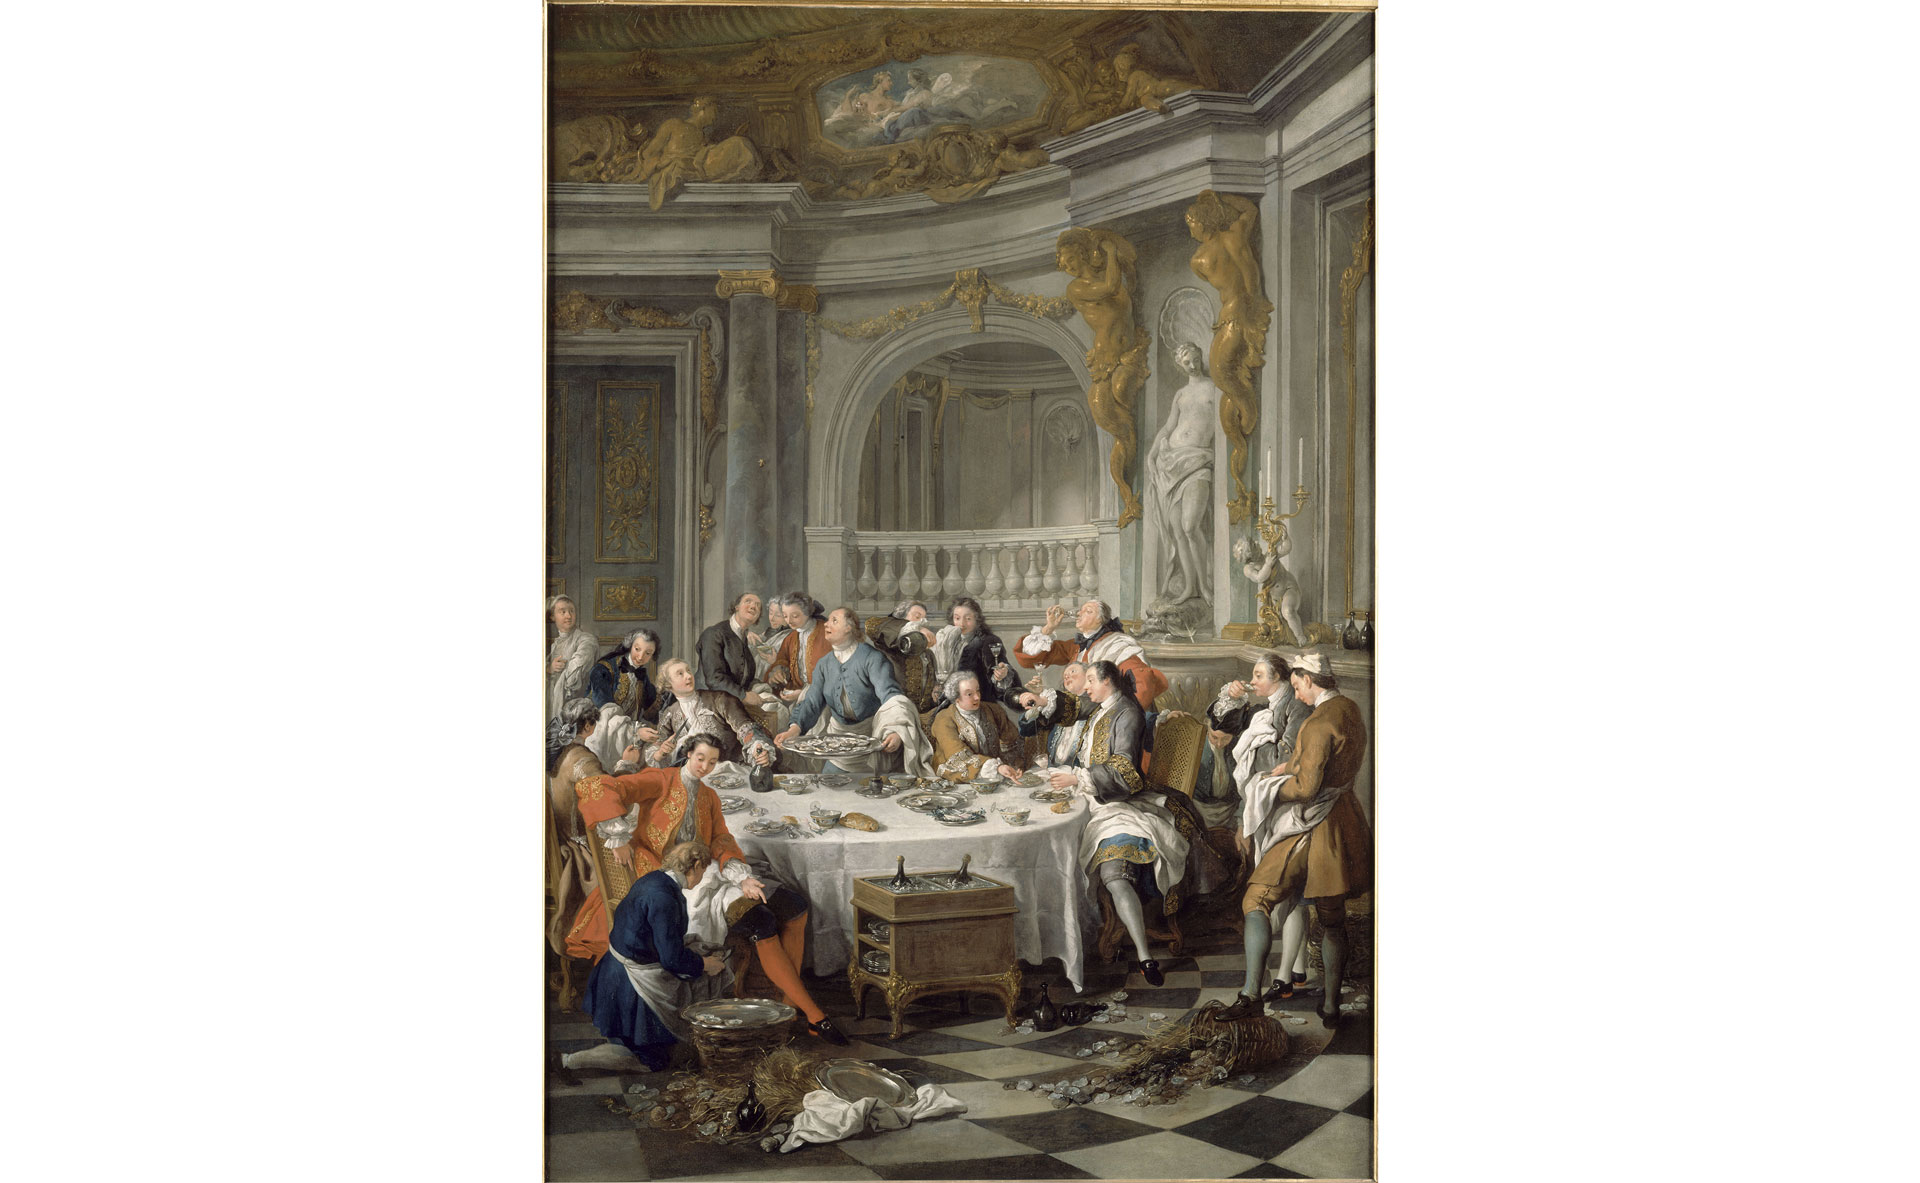 Le déjeuner d'huîtres commandé par Louis XV à Jean-François de Troy en 1734 - Crédits photos : Creative Commons